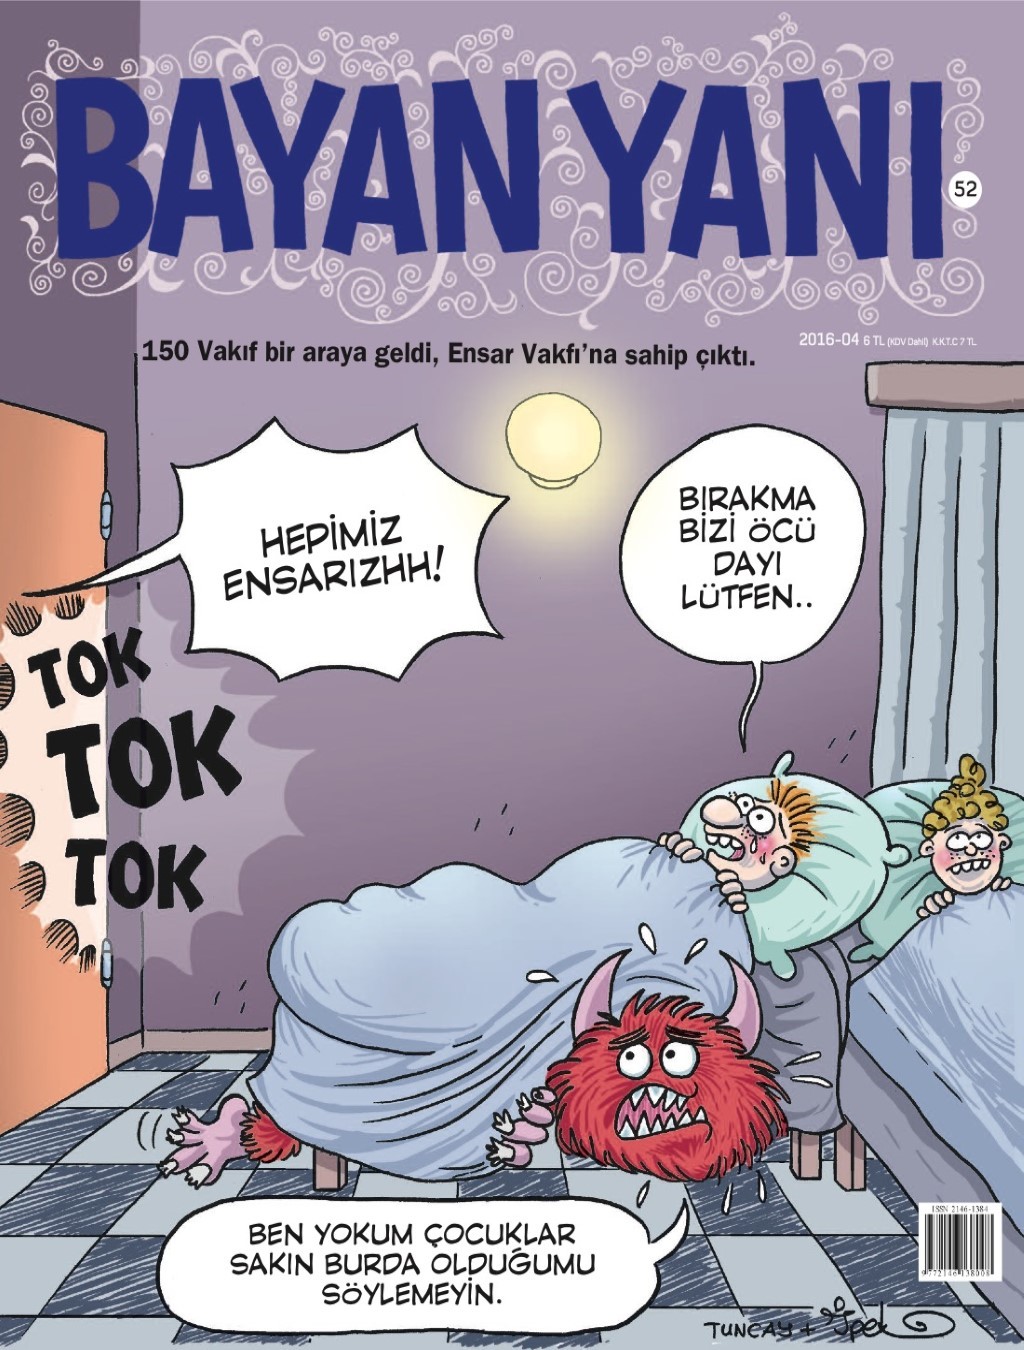 Bayan Yanı Nisan E-dergi indir Sandalca.com